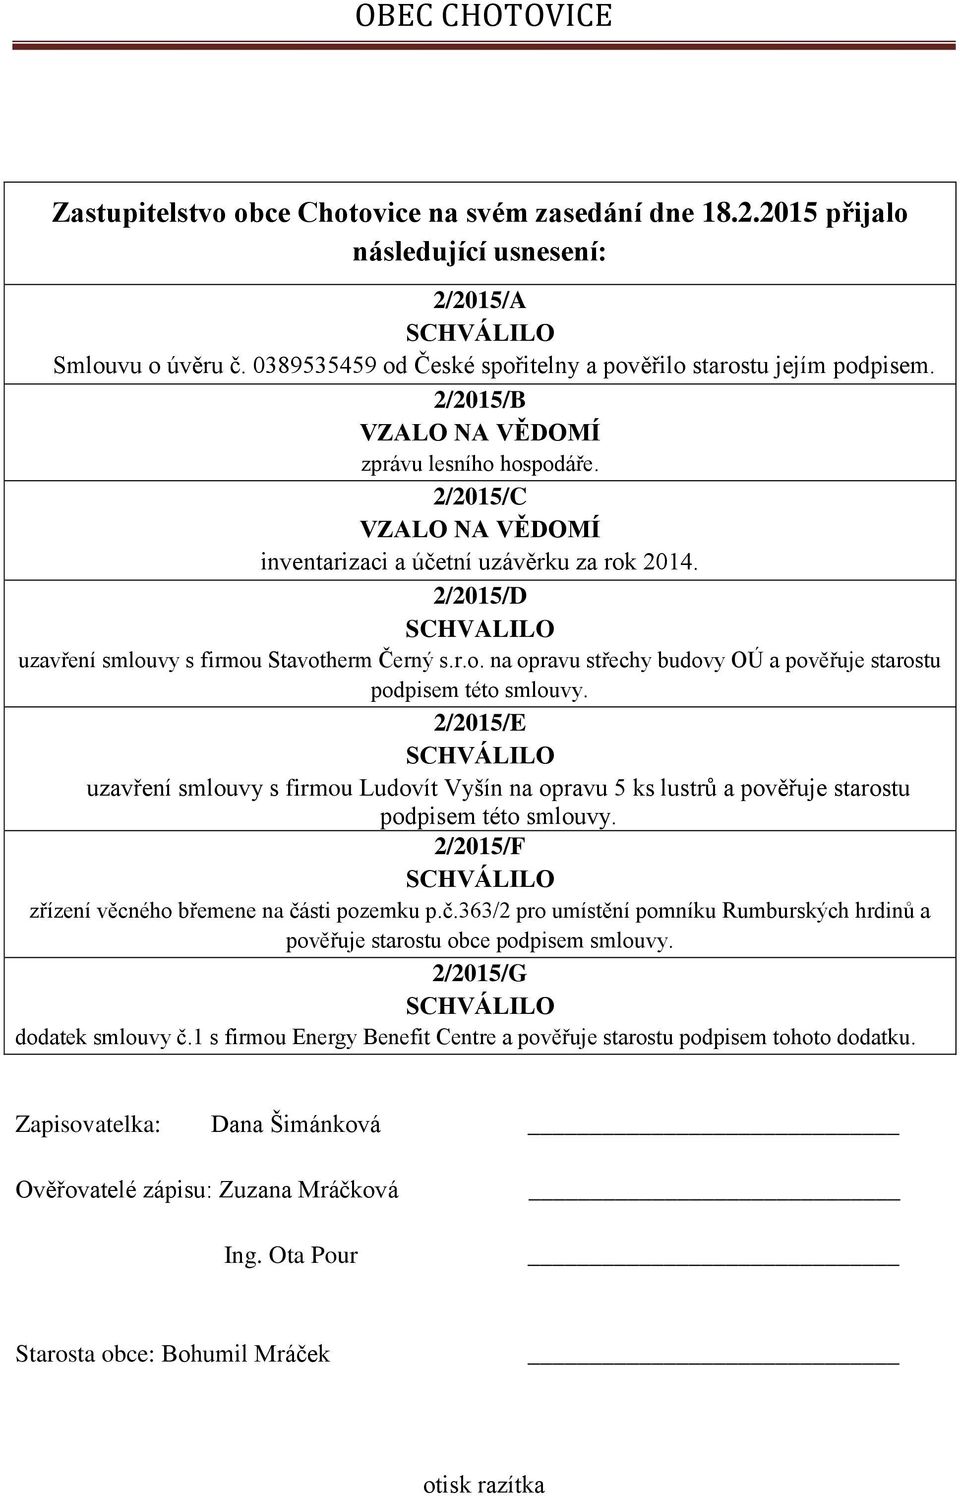 2/2015/E uzavření smlouvy s firmou Ludovít Vyšín na opravu 5 ks lustrů a pověřuje starostu podpisem této smlouvy. 2/2015/F zřízení věcného břemene na čá